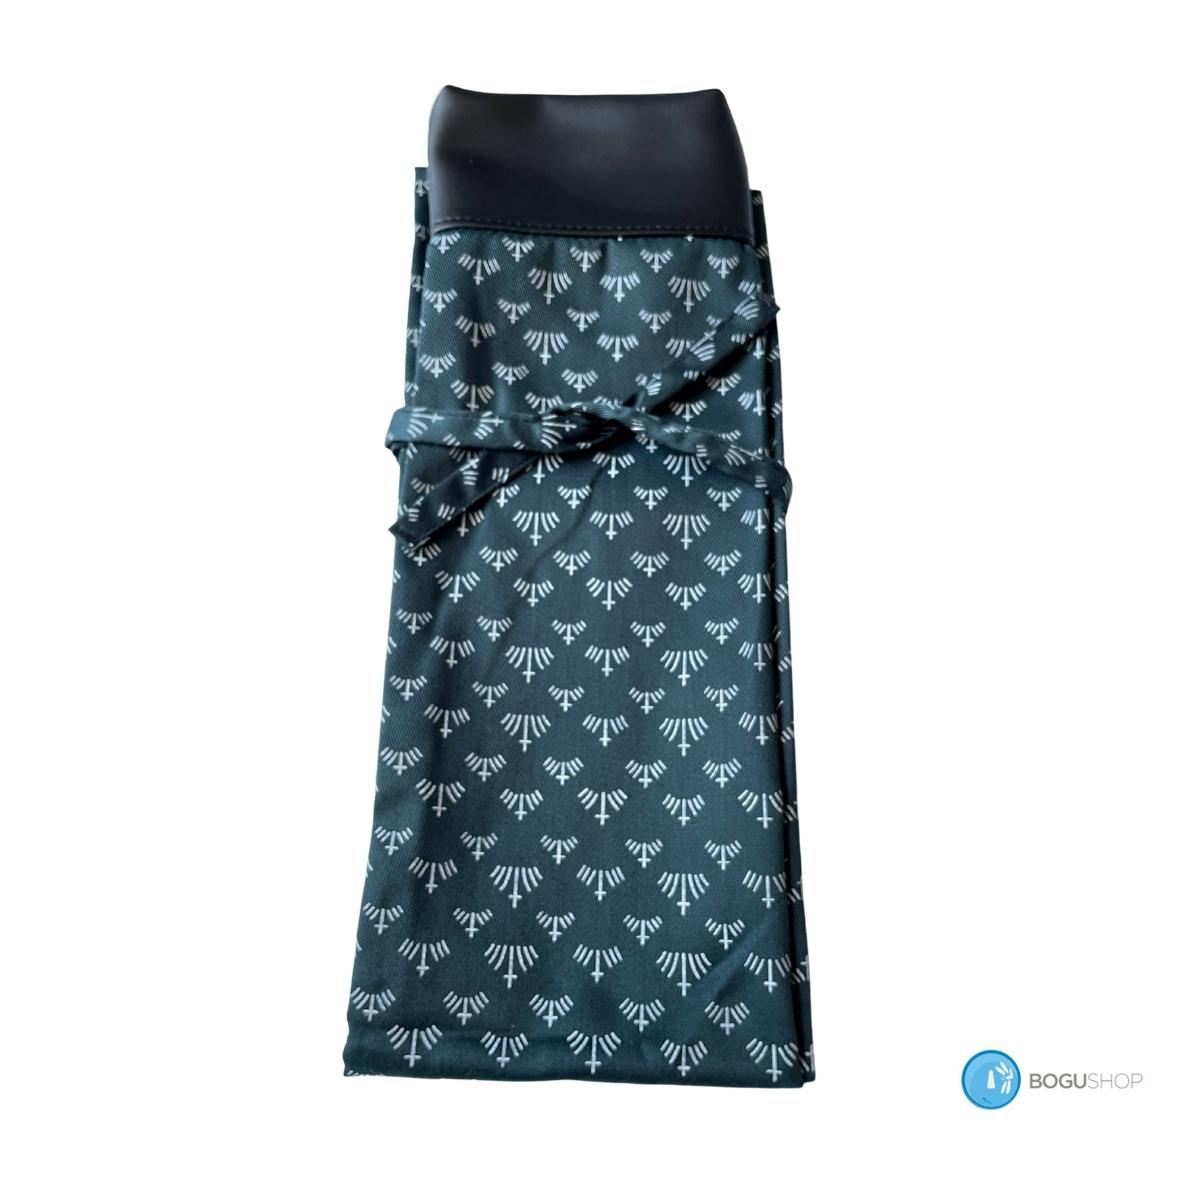 Cloth Shinai bag  - green traditional fabric (holds 1 or 2 Shinai) #3